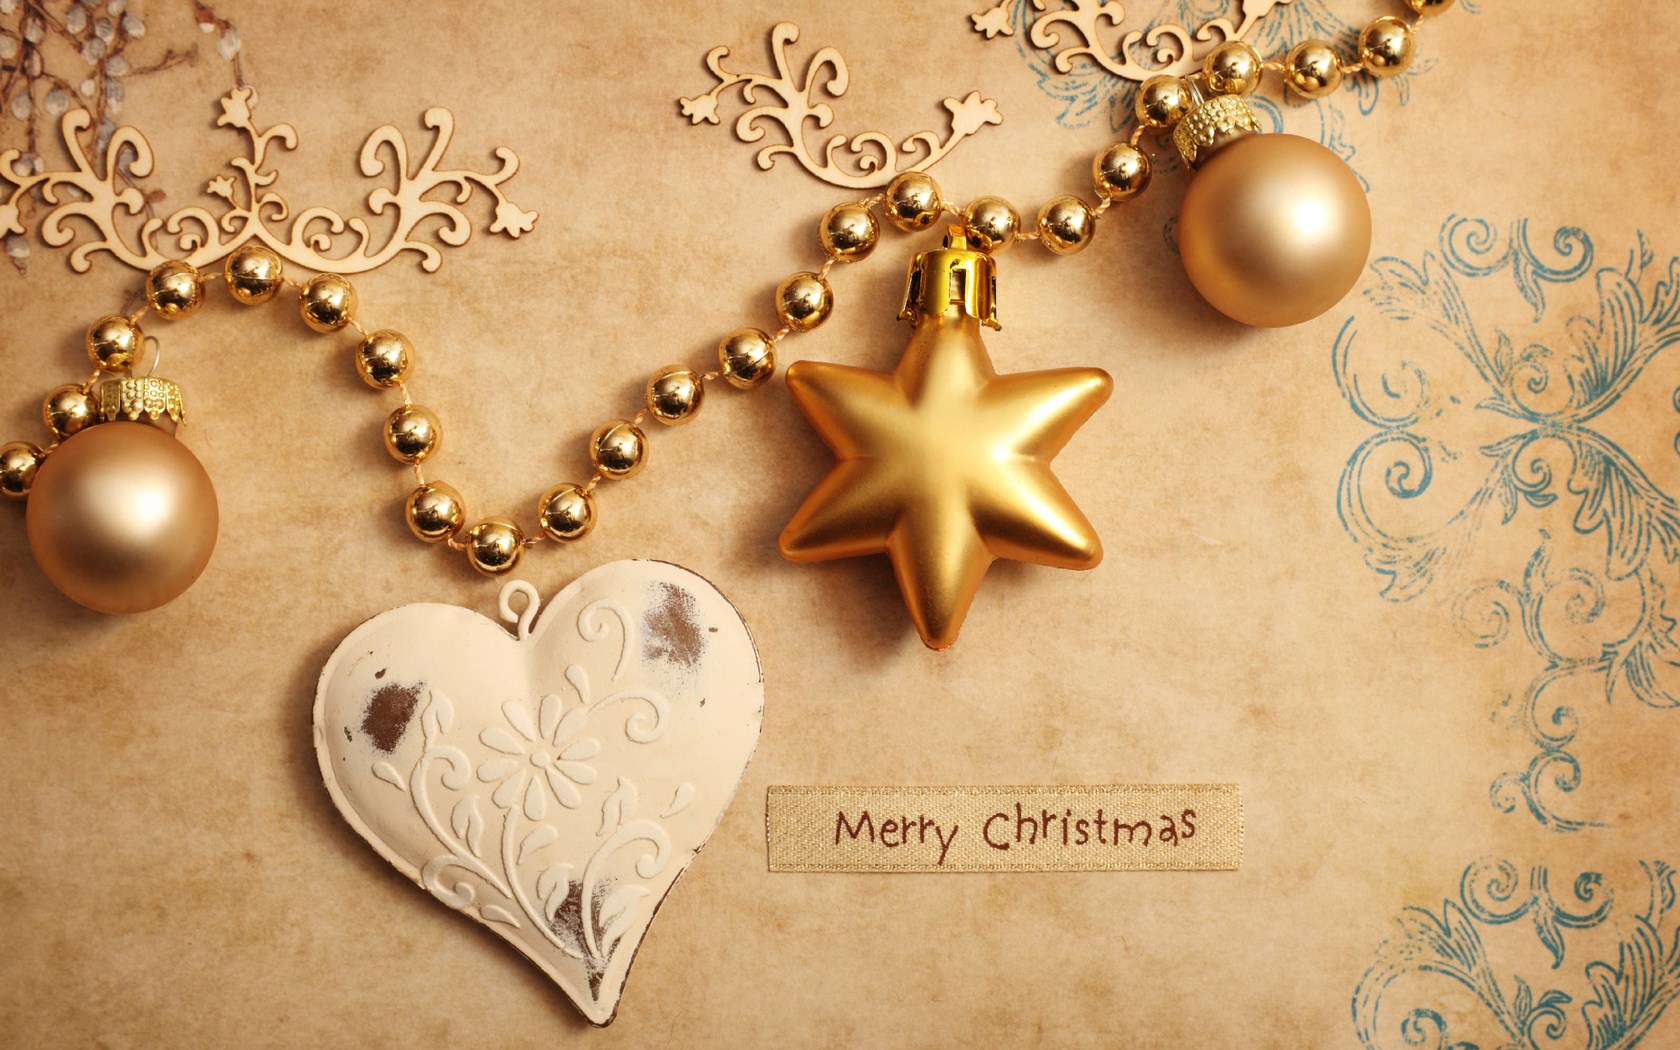 Merry Christmas Heart Golden Star Globe Hd Wallpaper   1680x1050 1680x1050